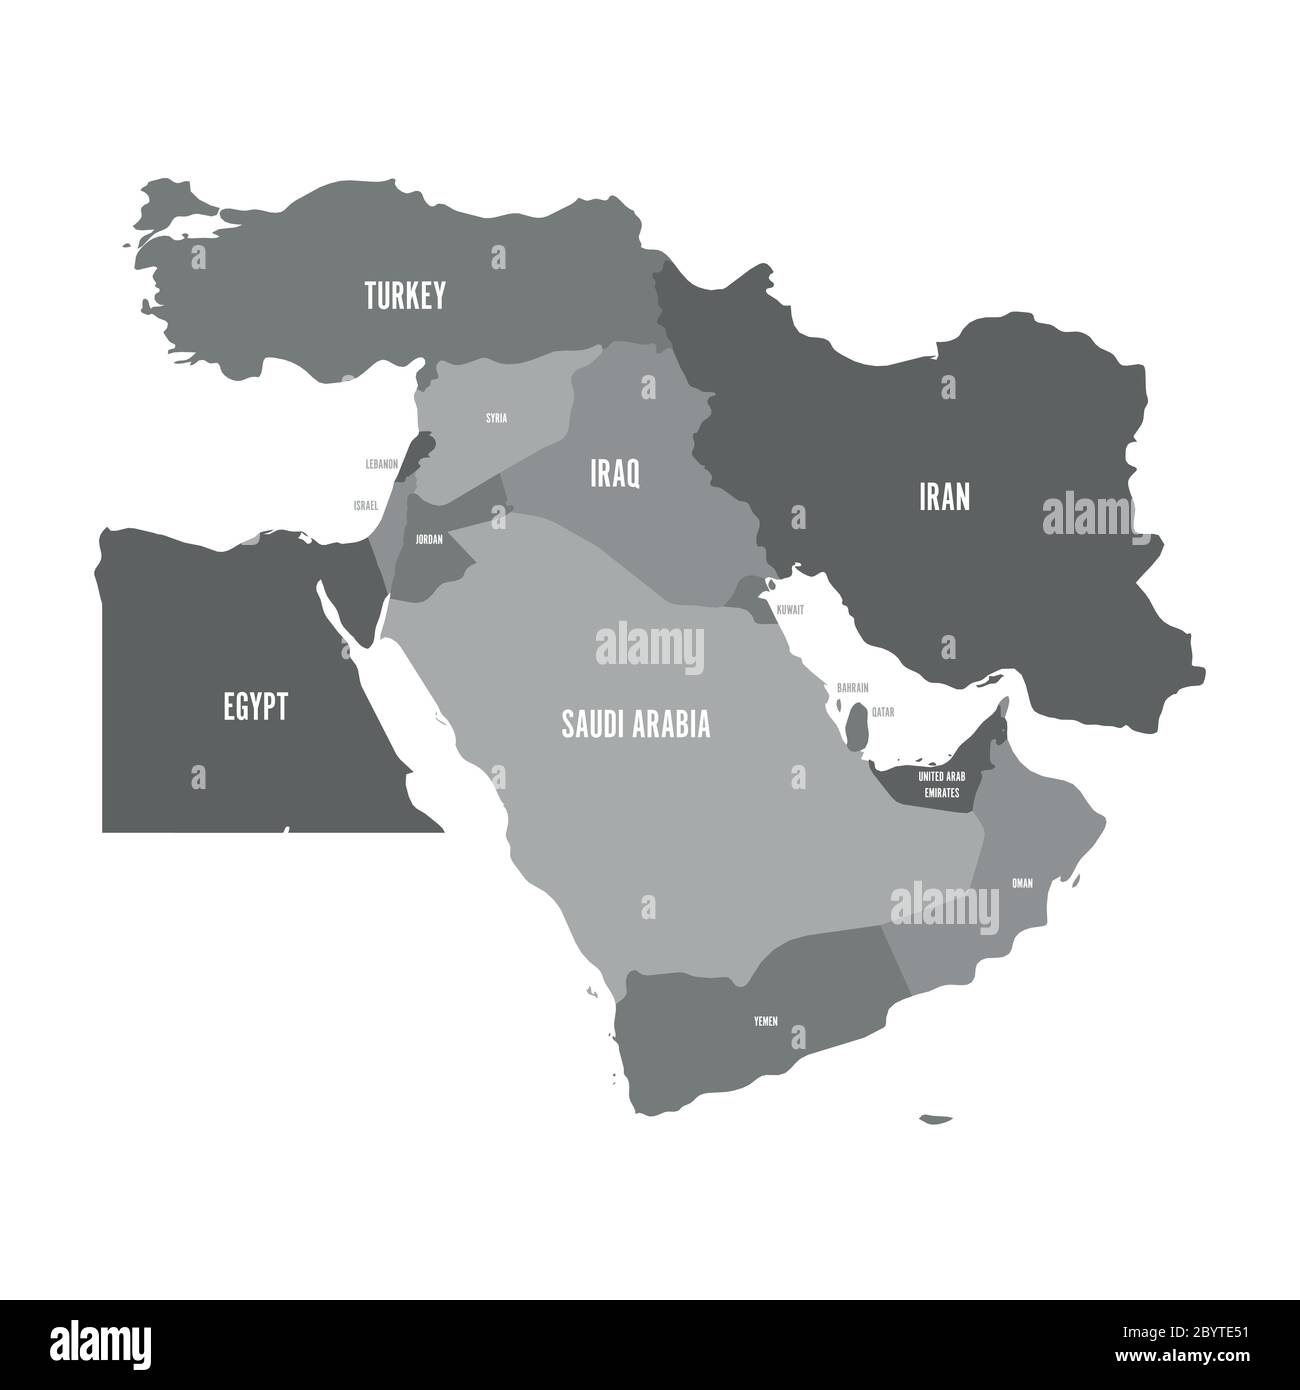 Mappa del Medio Oriente, o del Vicino Oriente, in tonalità di grigio. Semplice immagine vettoriale piatta. Illustrazione Vettoriale